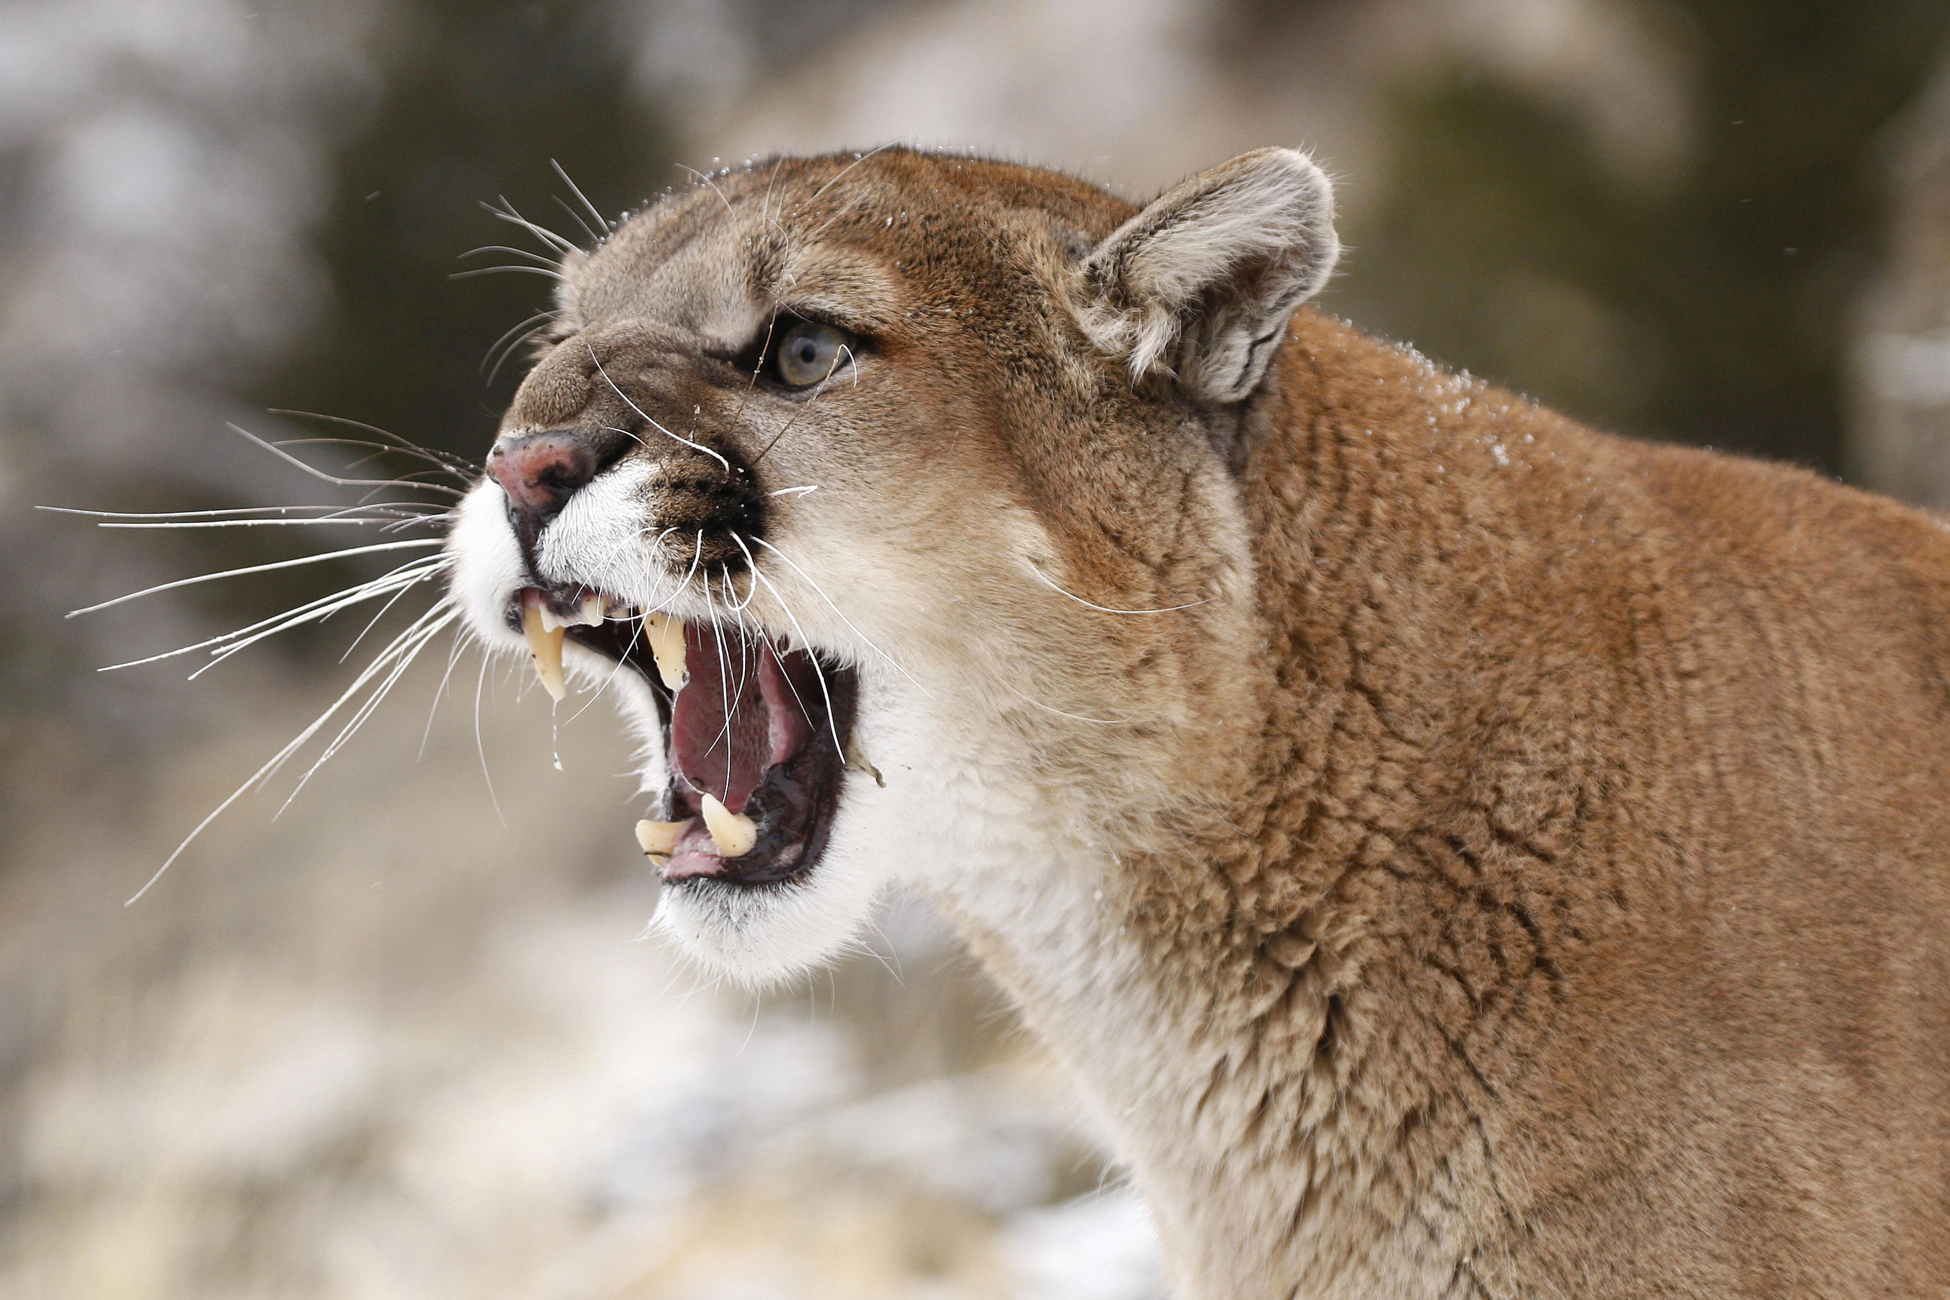 Screaming cougar